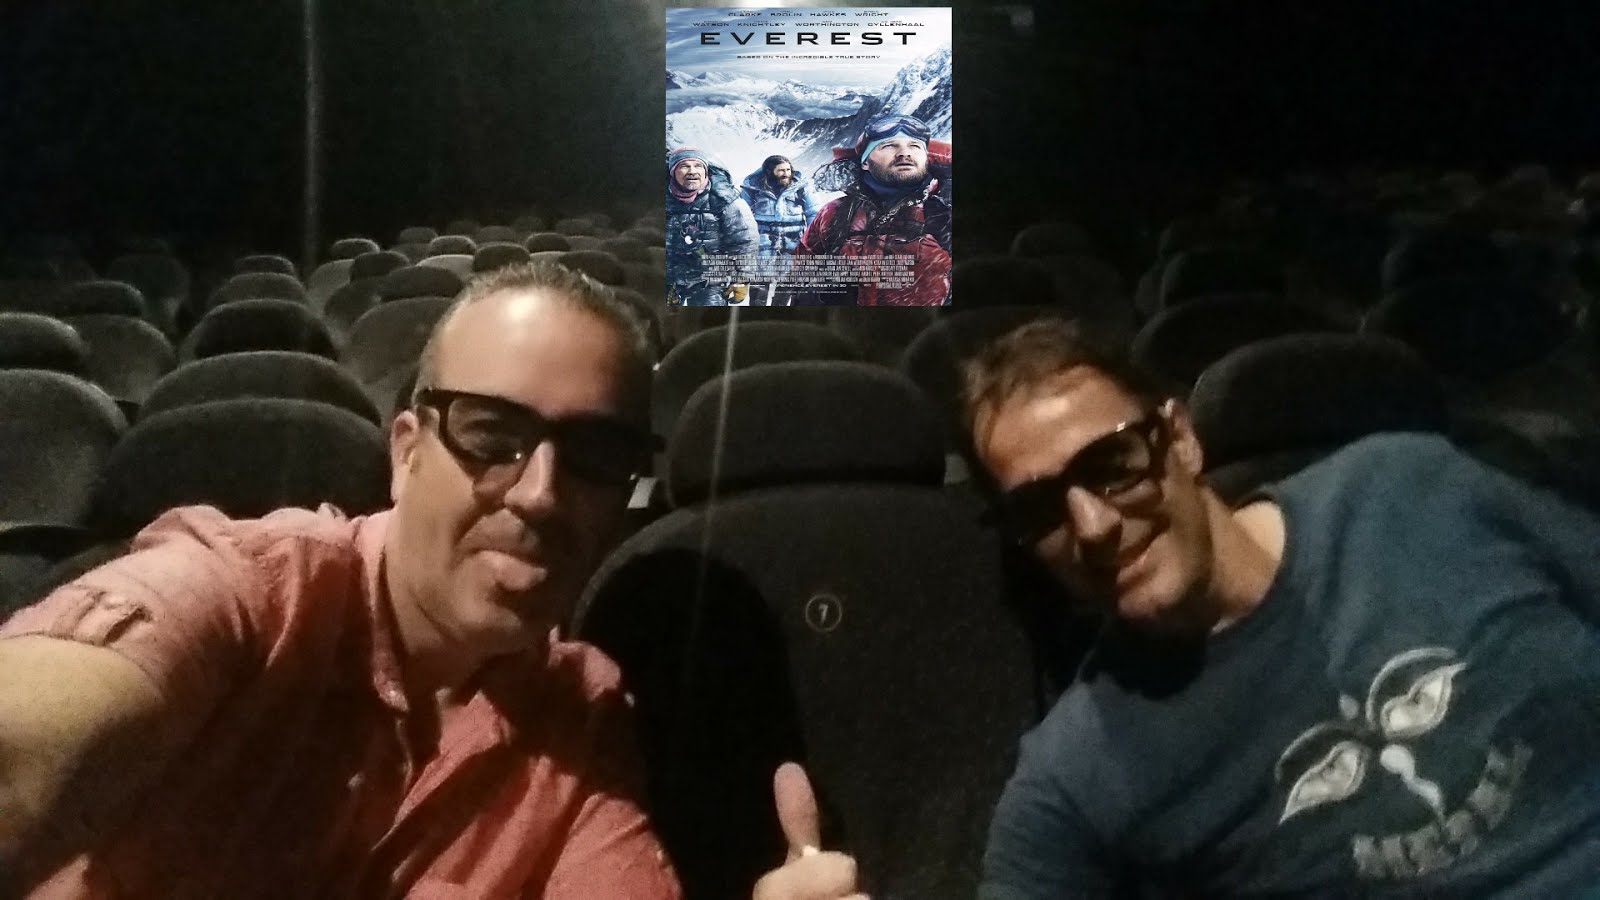 Carlos&Kike en el estreno de "Everest" en 3D